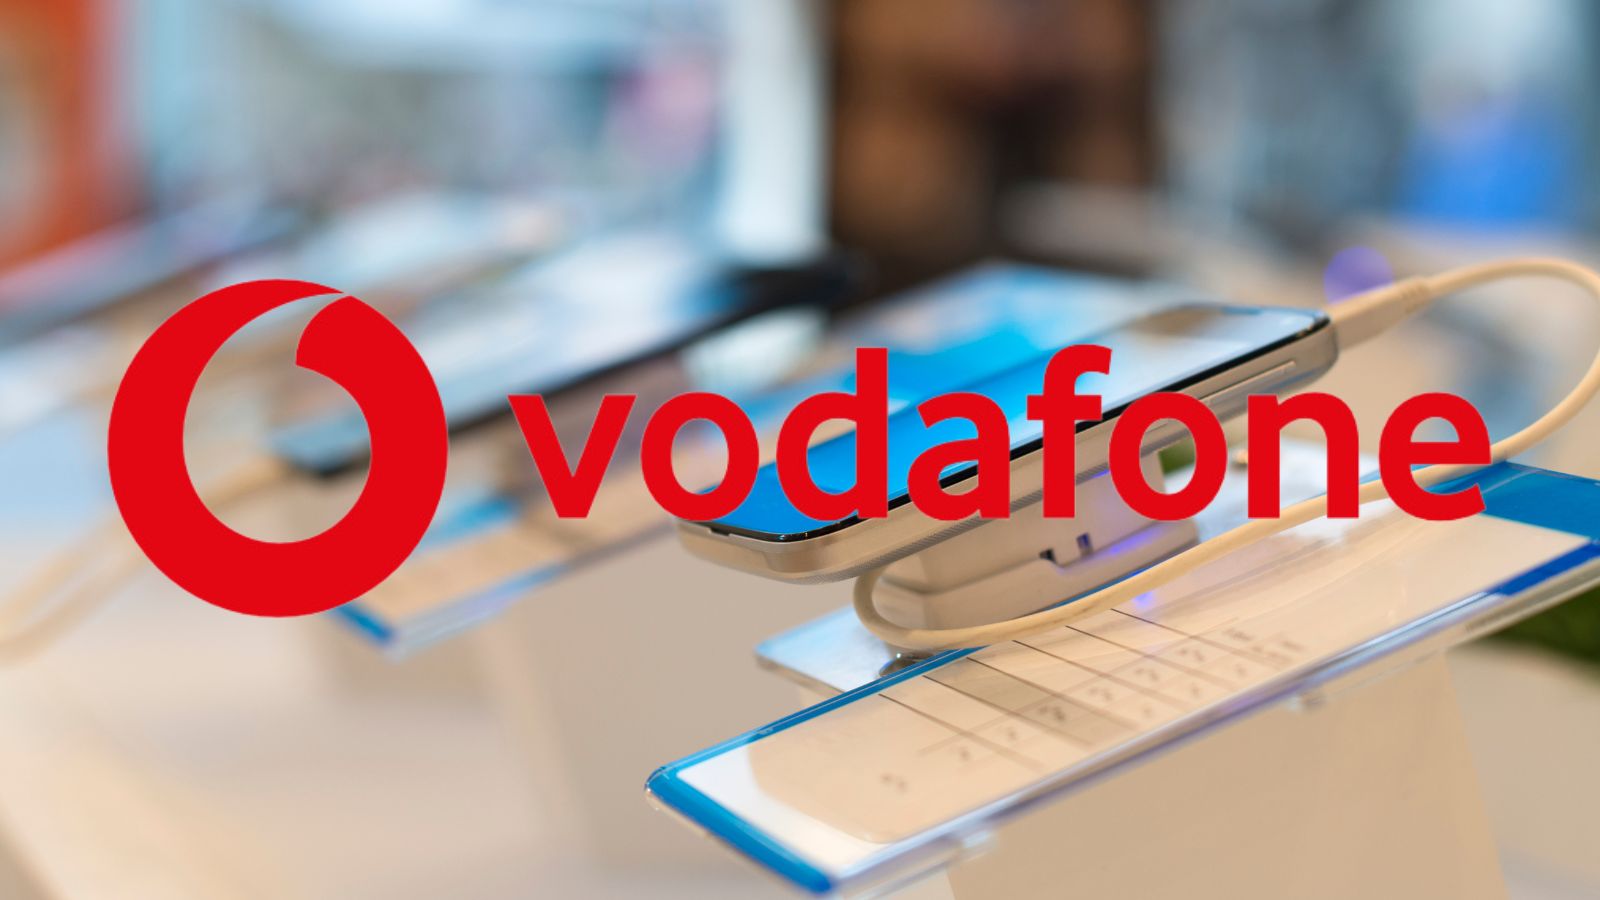 Vodafone FOLLE, attivate subito quest'offerta o ve ne pentirete!